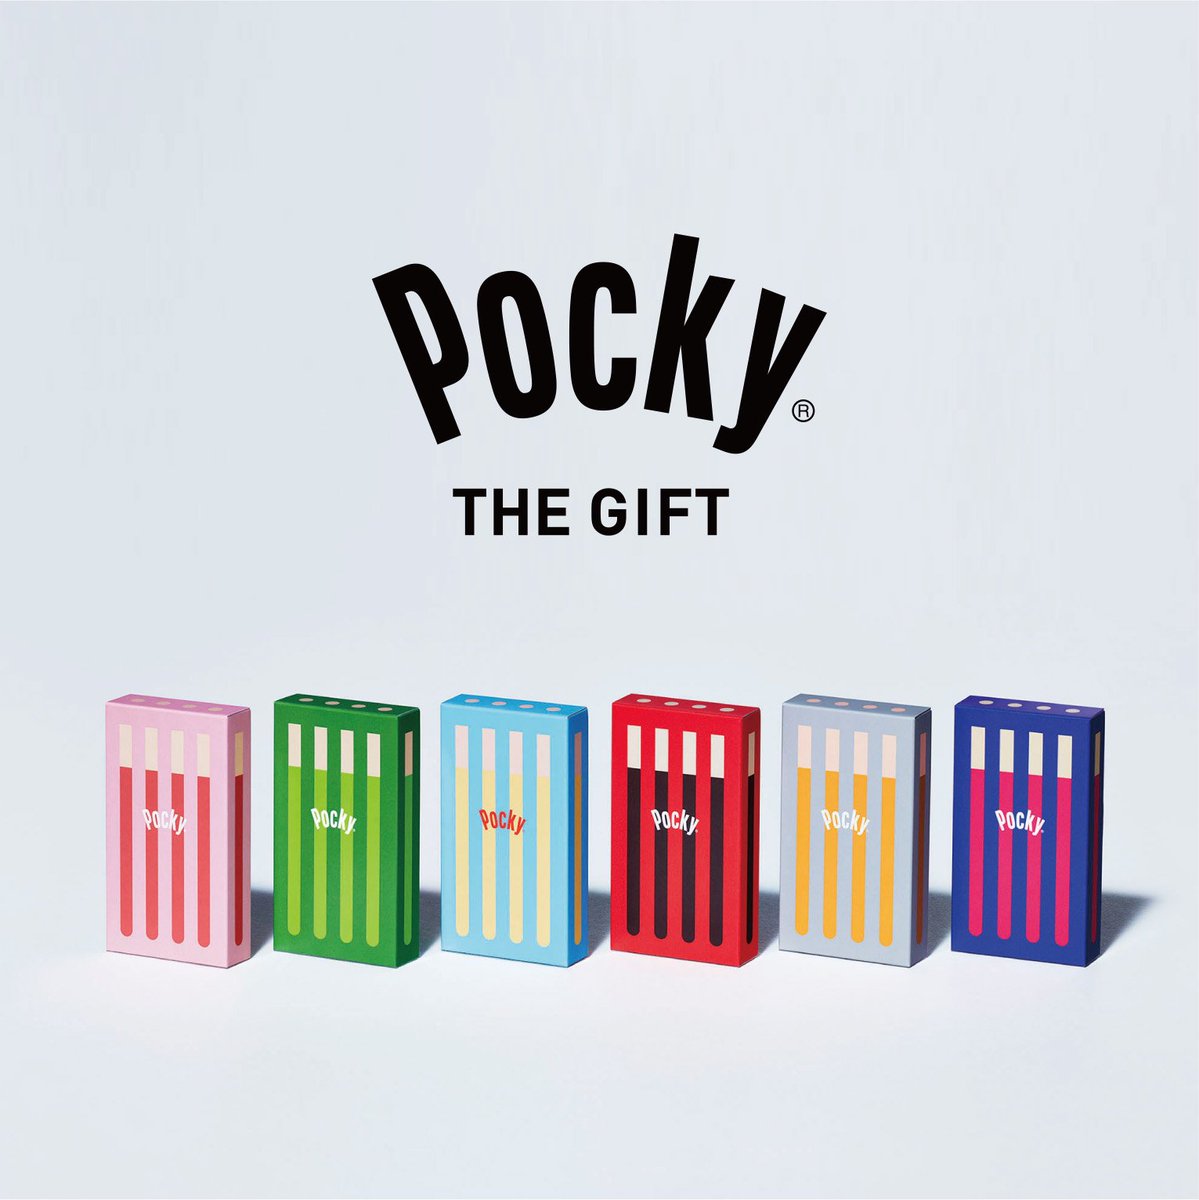 Pocky Japan ポッキーの専門店 2号店 Pocky The Gift の2号店が本日 新宿マルイ本館 にオープン 10 5 1 6の3ヵ月期間限定 1つ1つがプレゼントの箱みたいにカラフルなポッキー 好きな味や色を組み合わせ あなただけのオリジナルギフトが